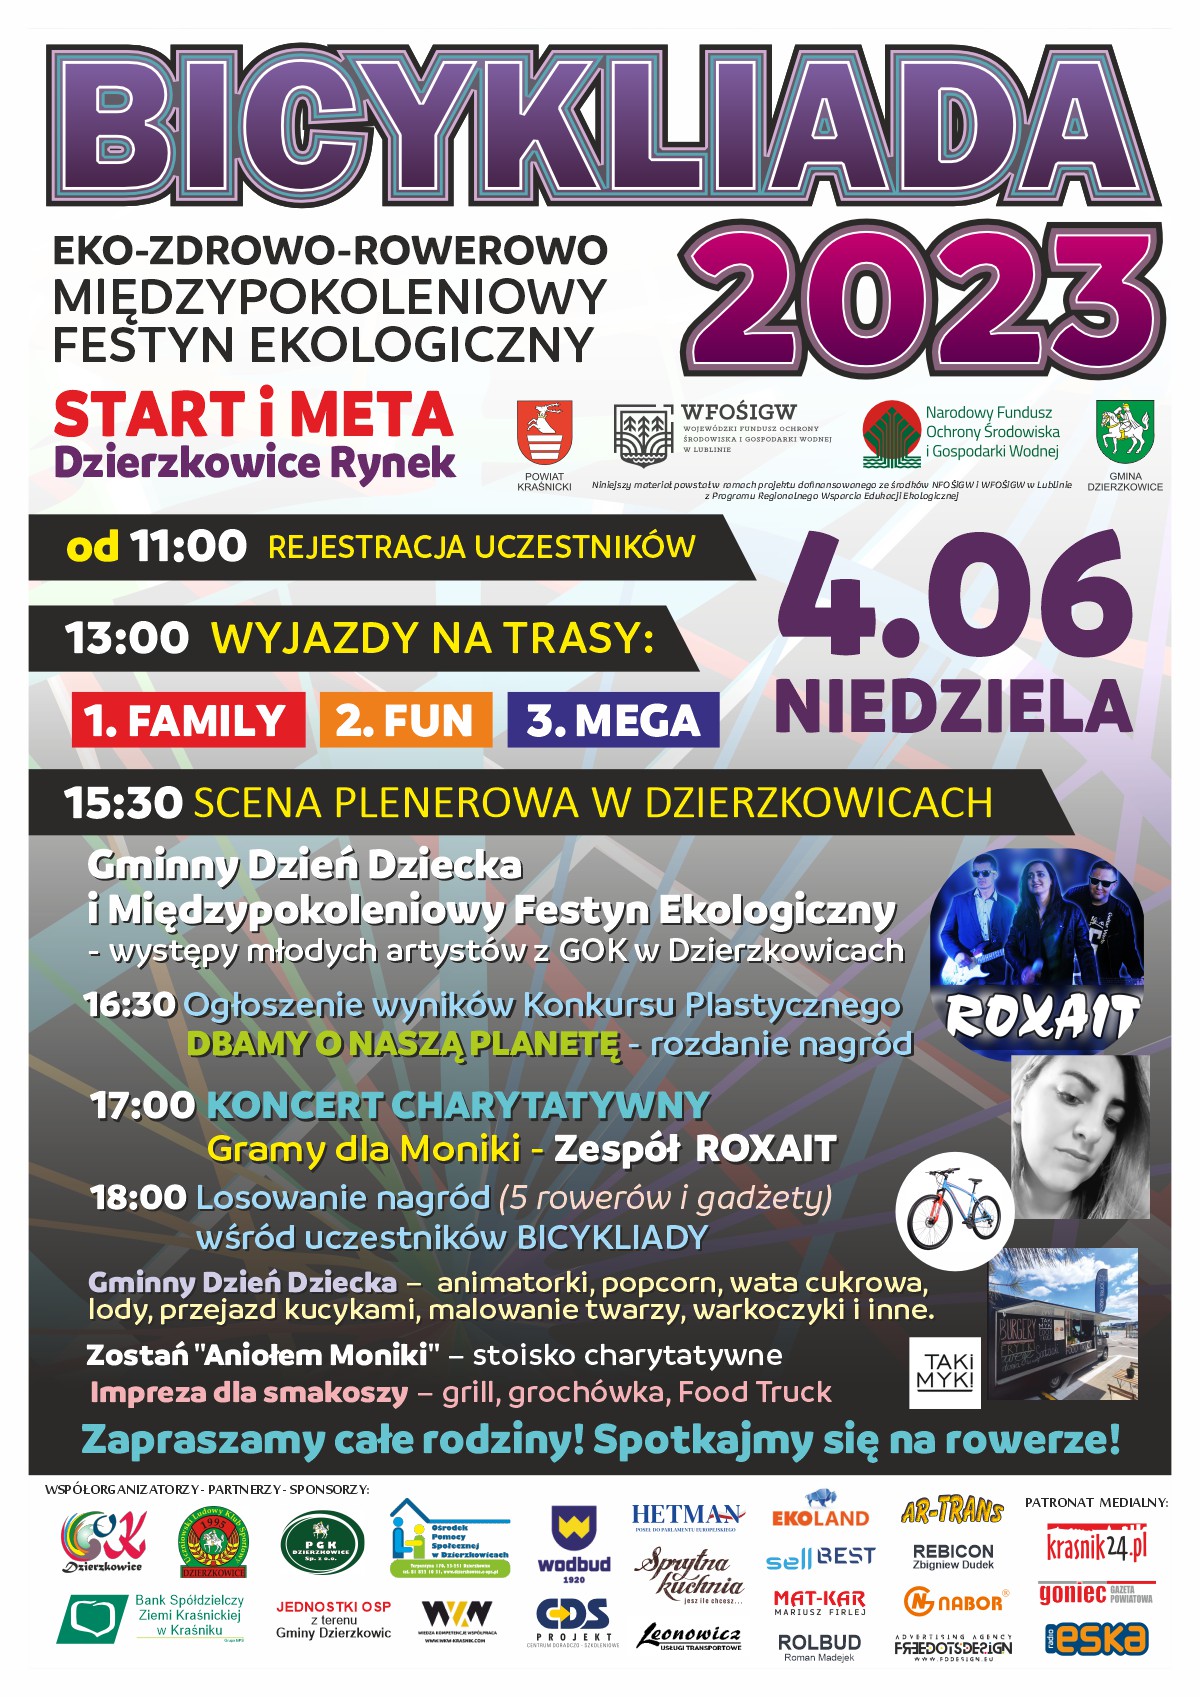 BICYKLIADA 2023 EKO-ZDROWO-ROWEROWO MIĘDZYPOKOLENIOWY FESTYN EKOLOGICZNY - zdjęcie